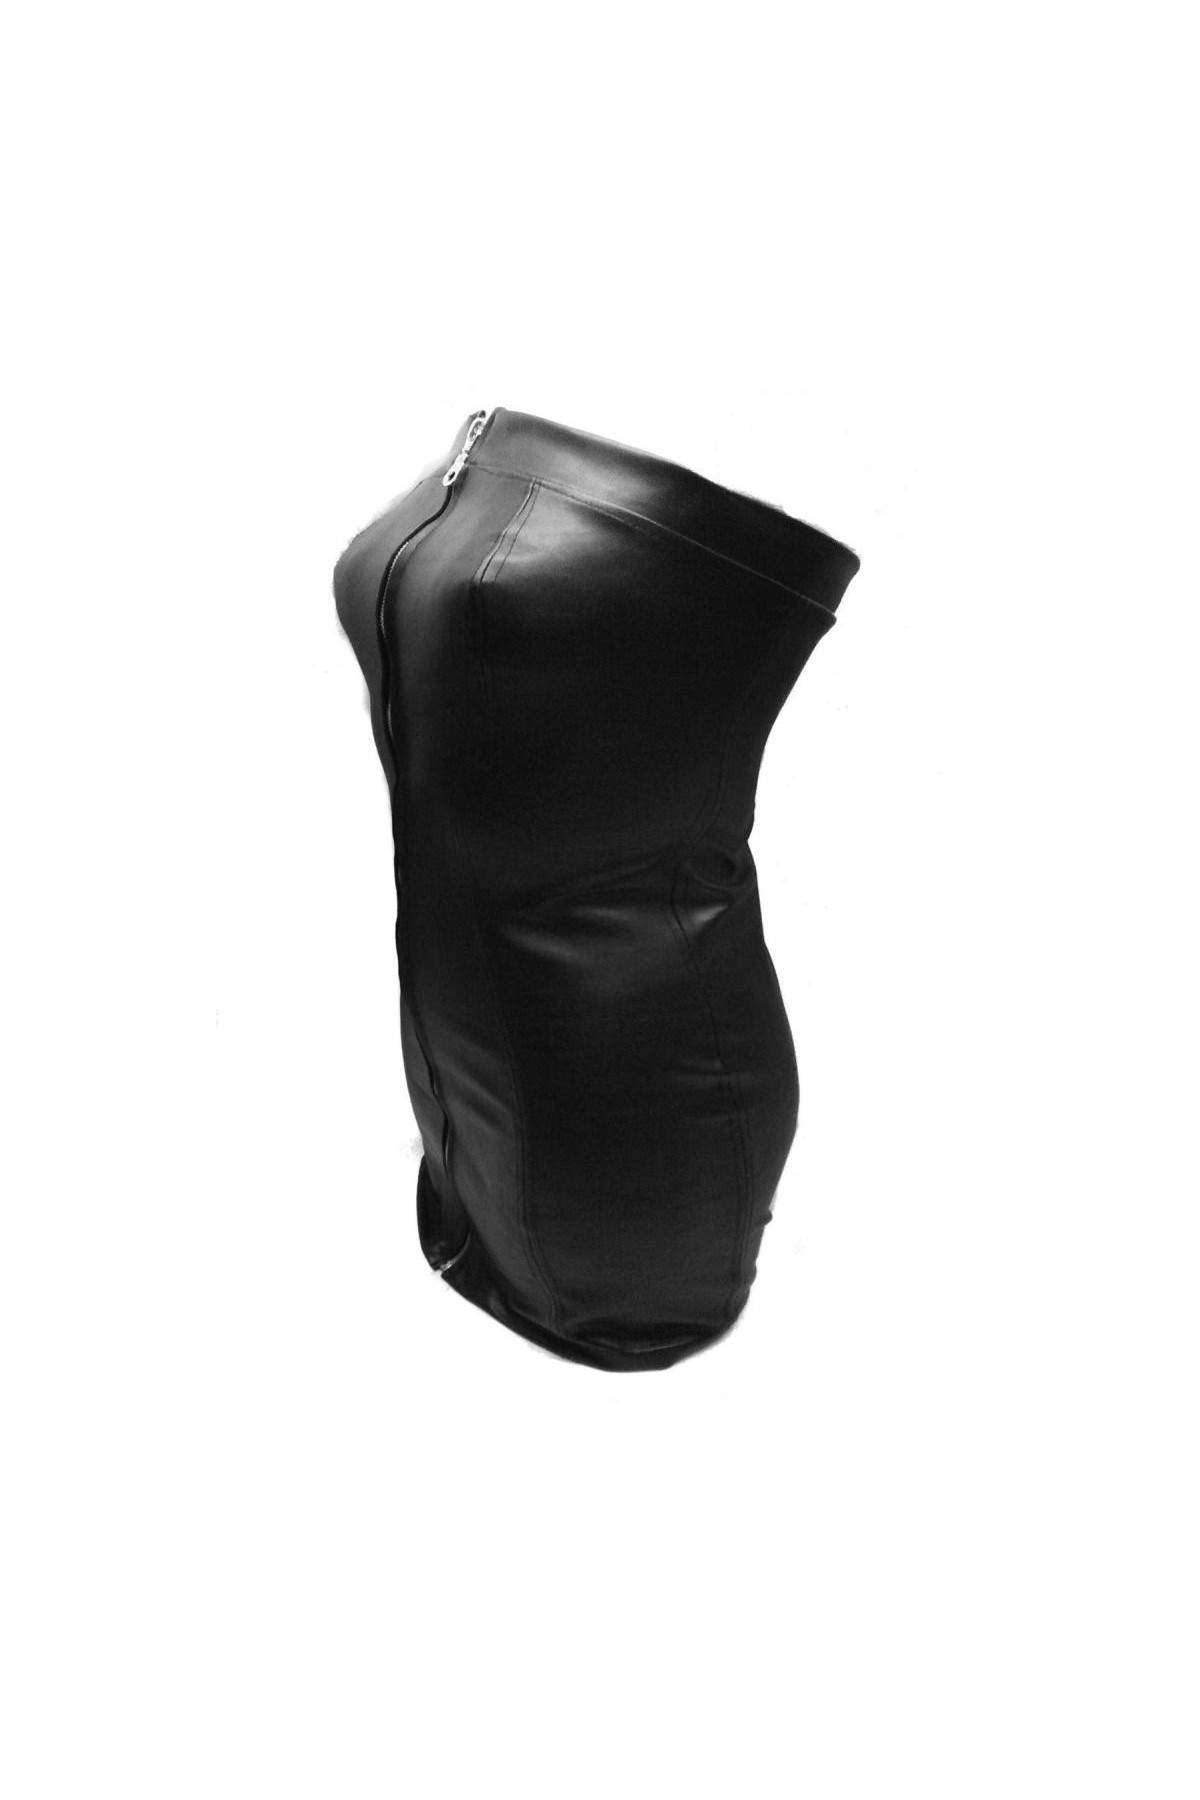 Vestido de cuero negro de diseño talla L - XXL (44 - 52) - Deutsche Produktion